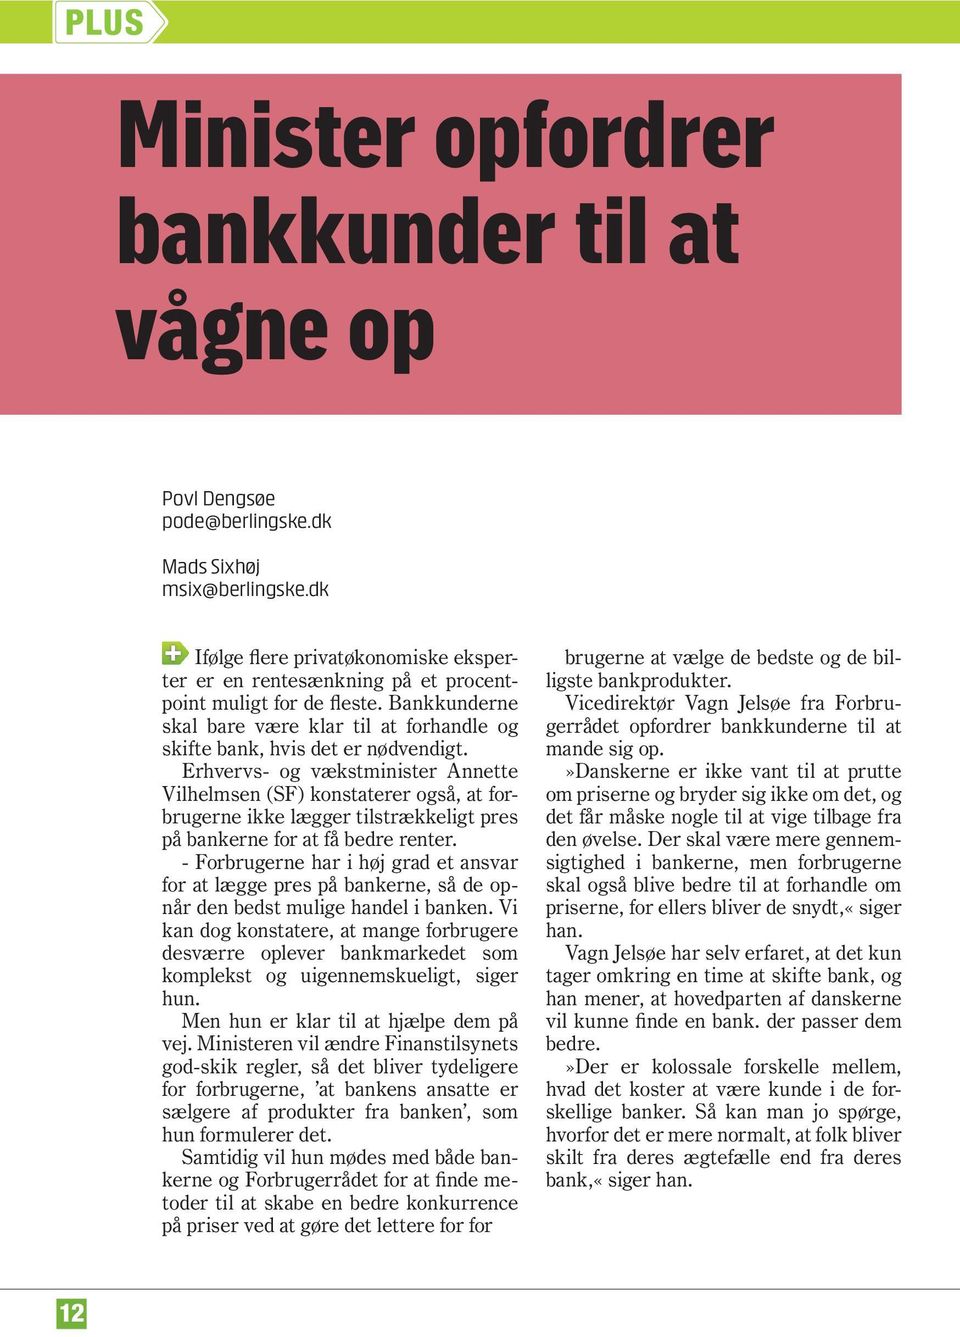 Erhvervs- og vækstminister Annette Vilhelmsen (SF) konstaterer også, at forbrugerne ikke lægger tilstrækkeligt pres på bankerne for at få bedre renter.